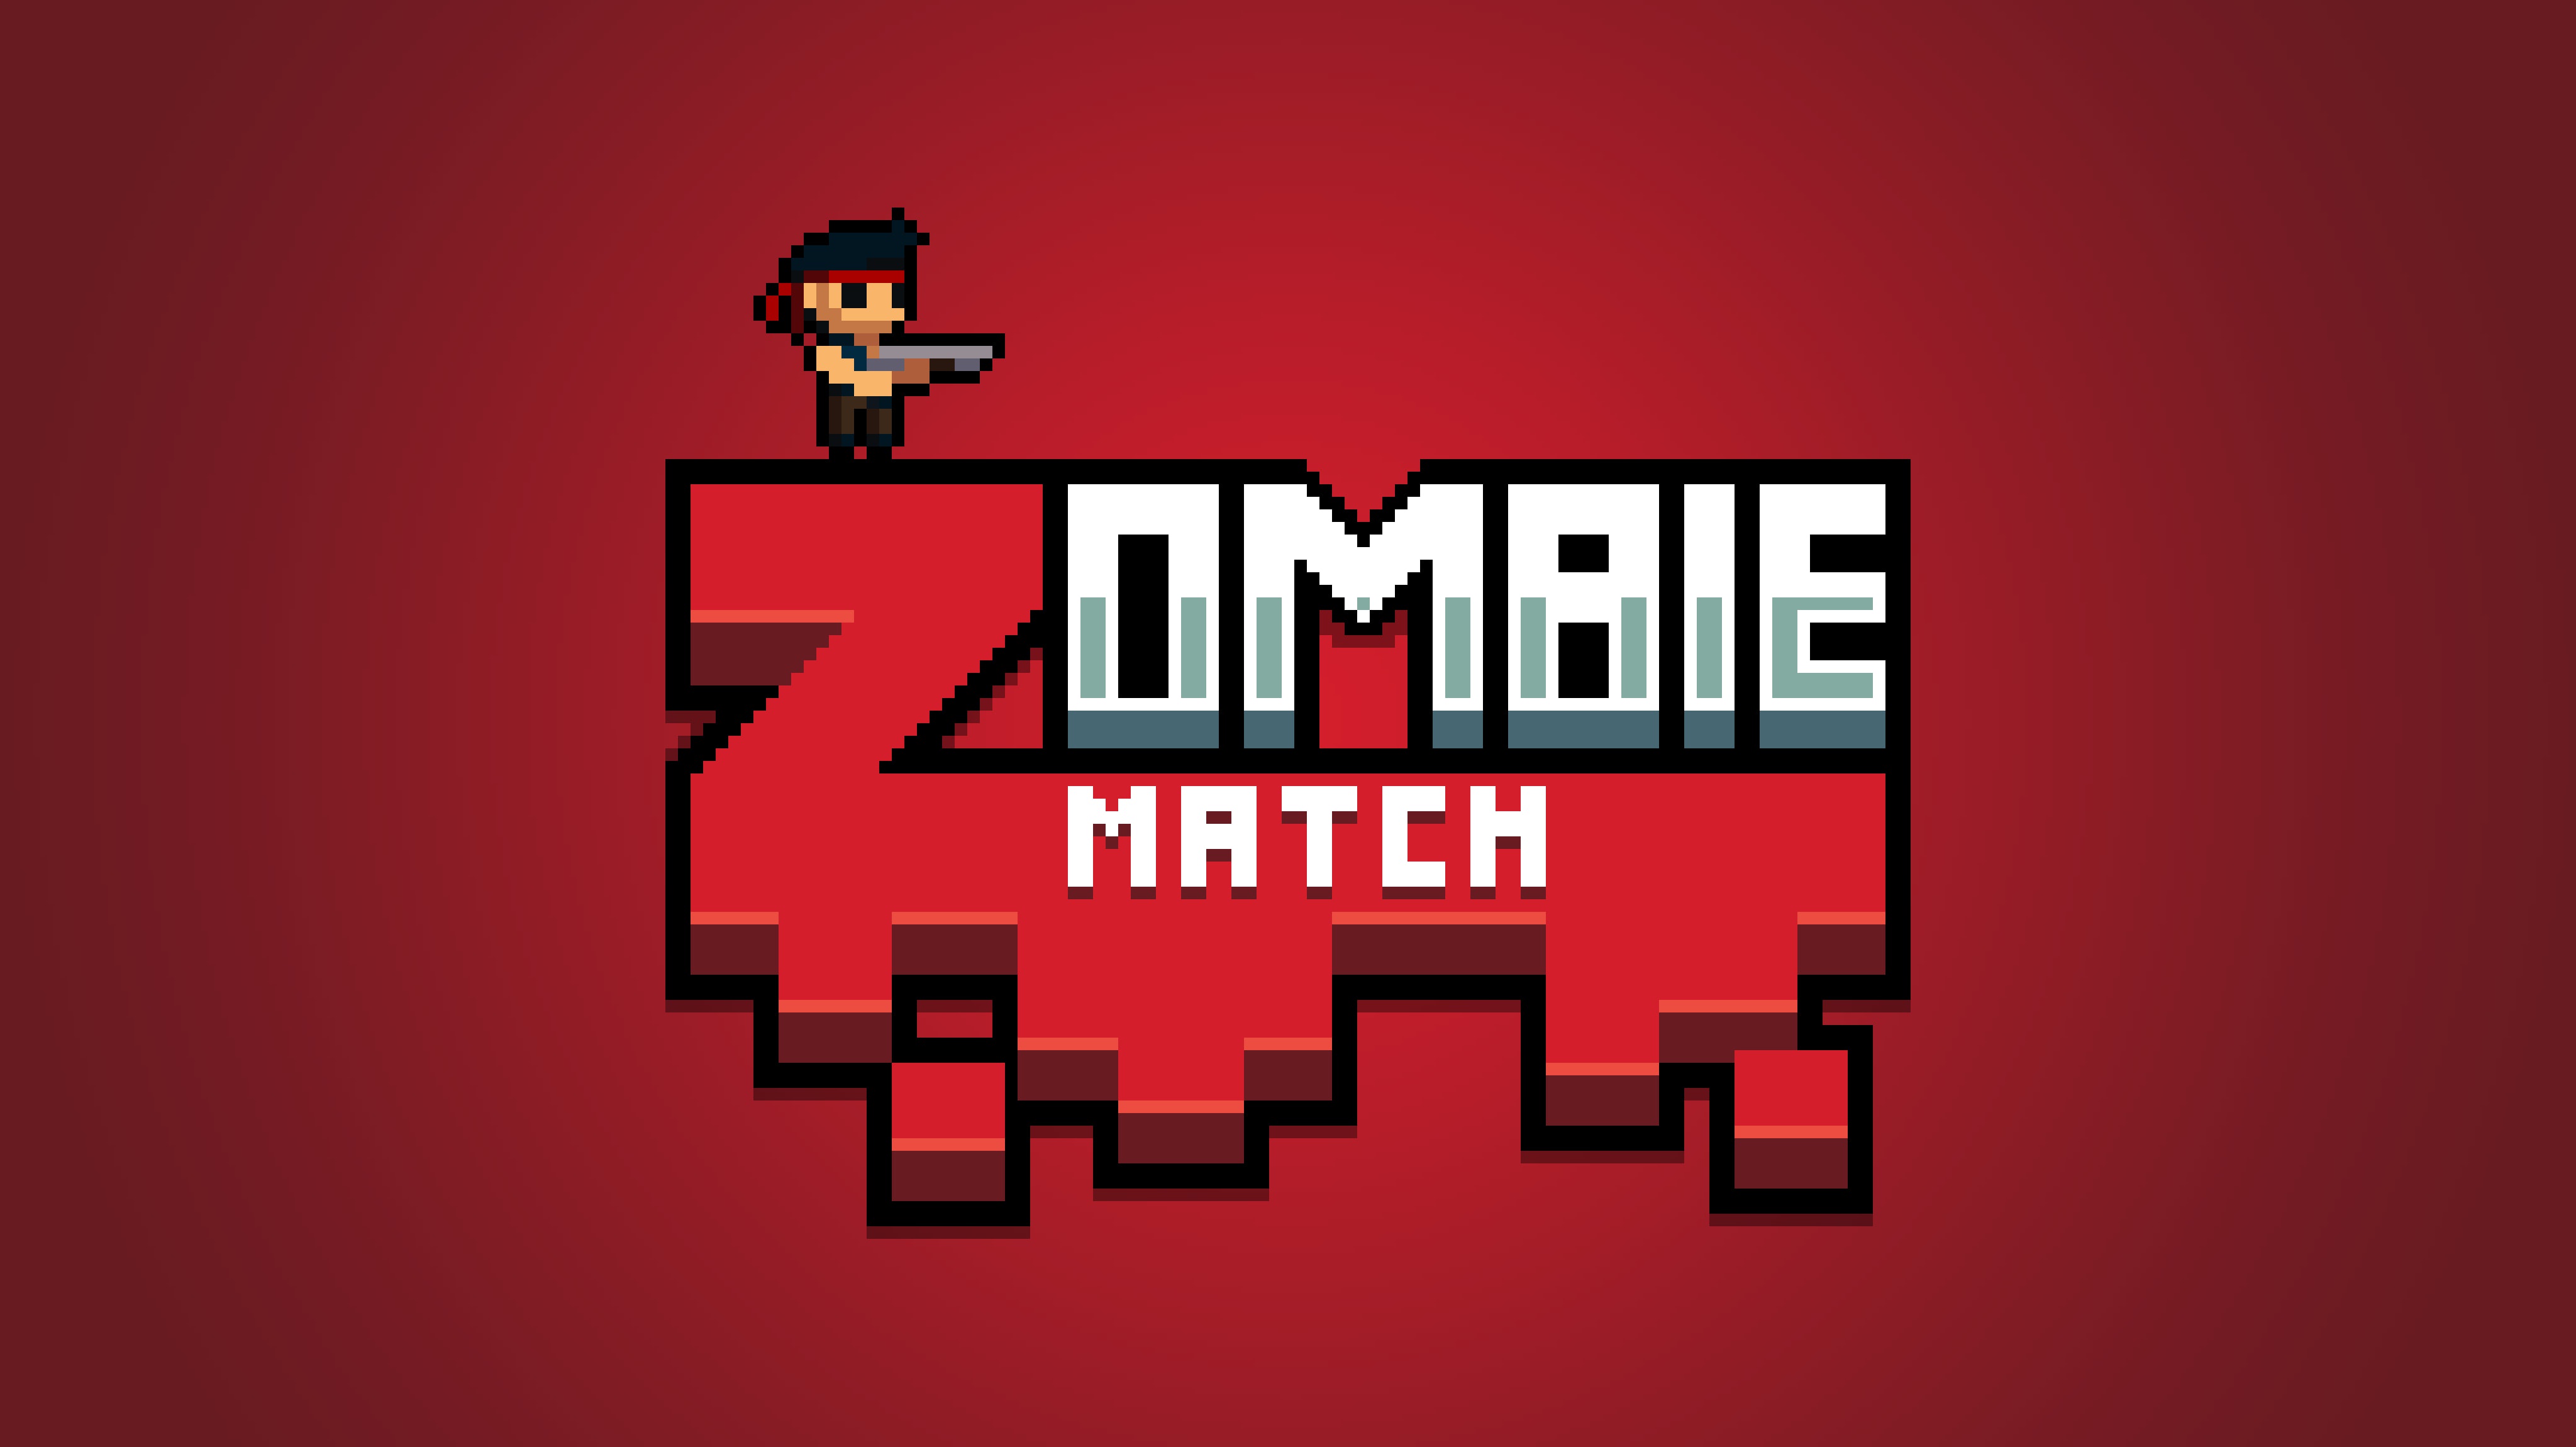 Zombs Royale (ZombsRoyale.io) 🕹️ Jogue no CrazyGames